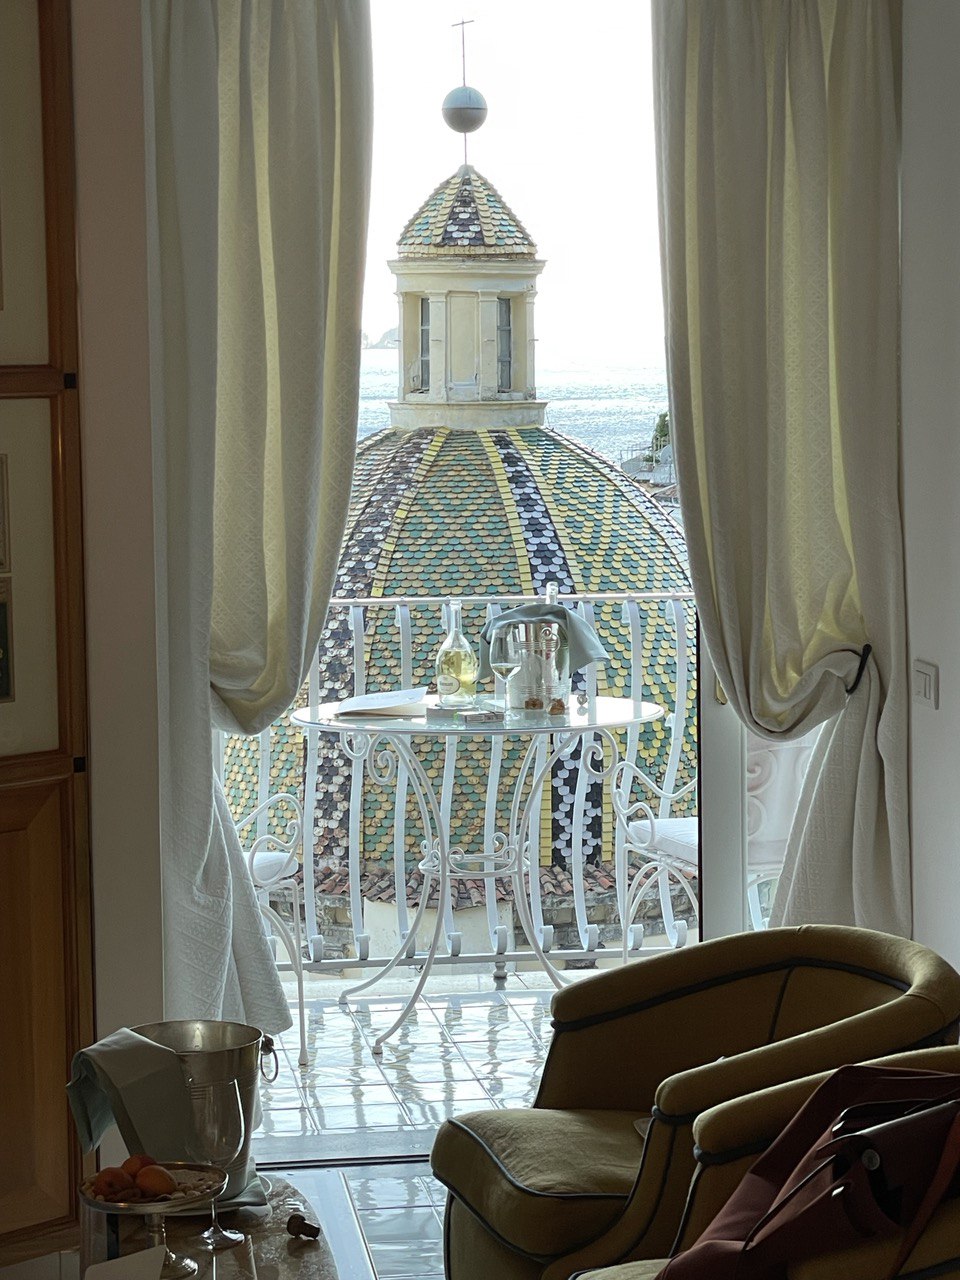 Hoteling in Positano